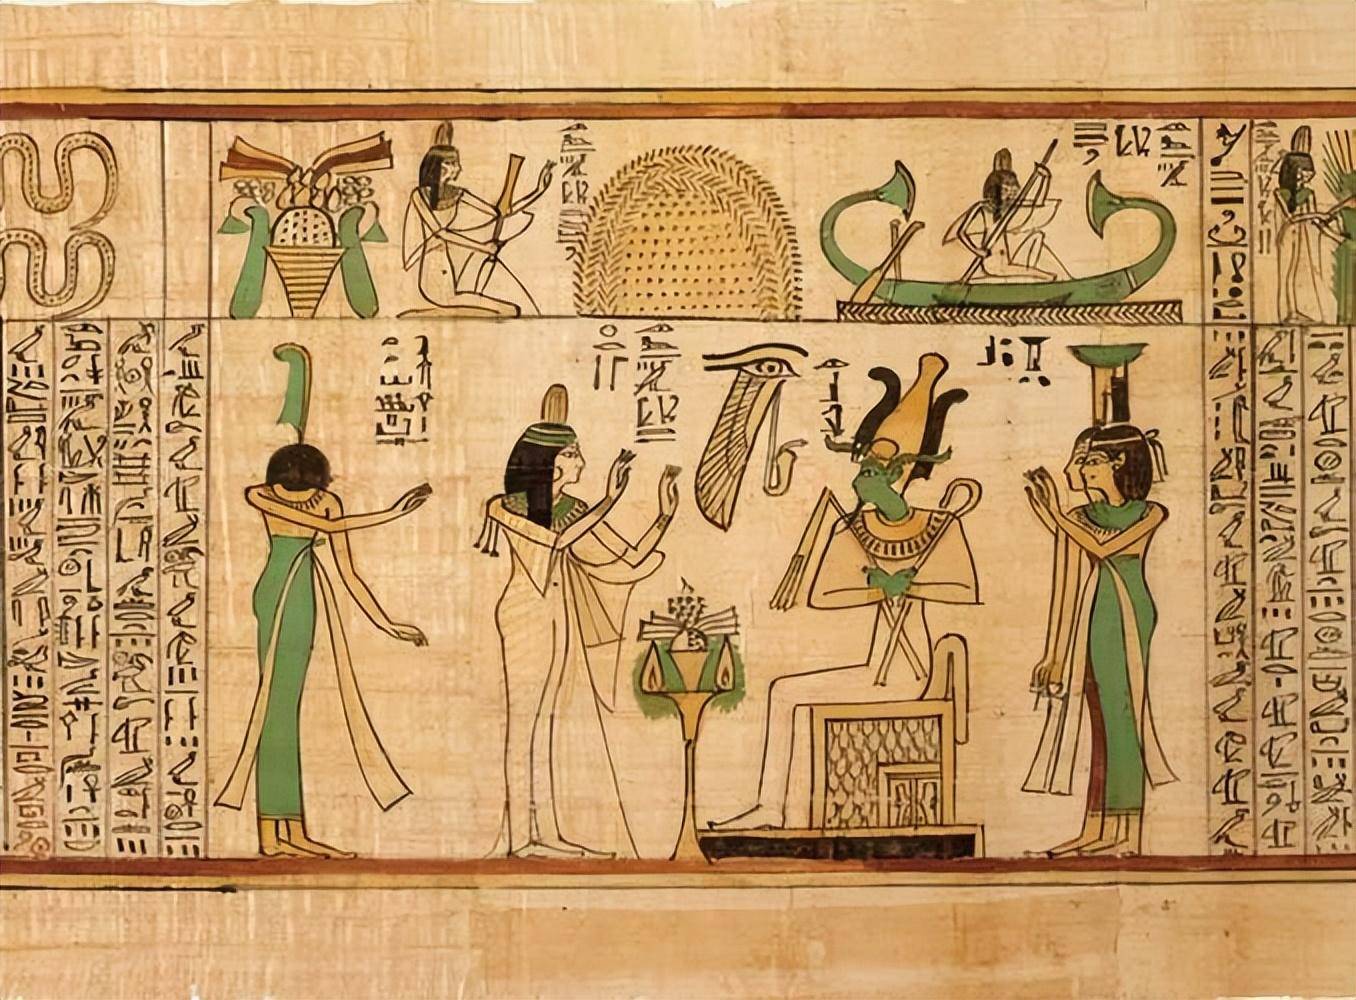 古埃及文明探讨